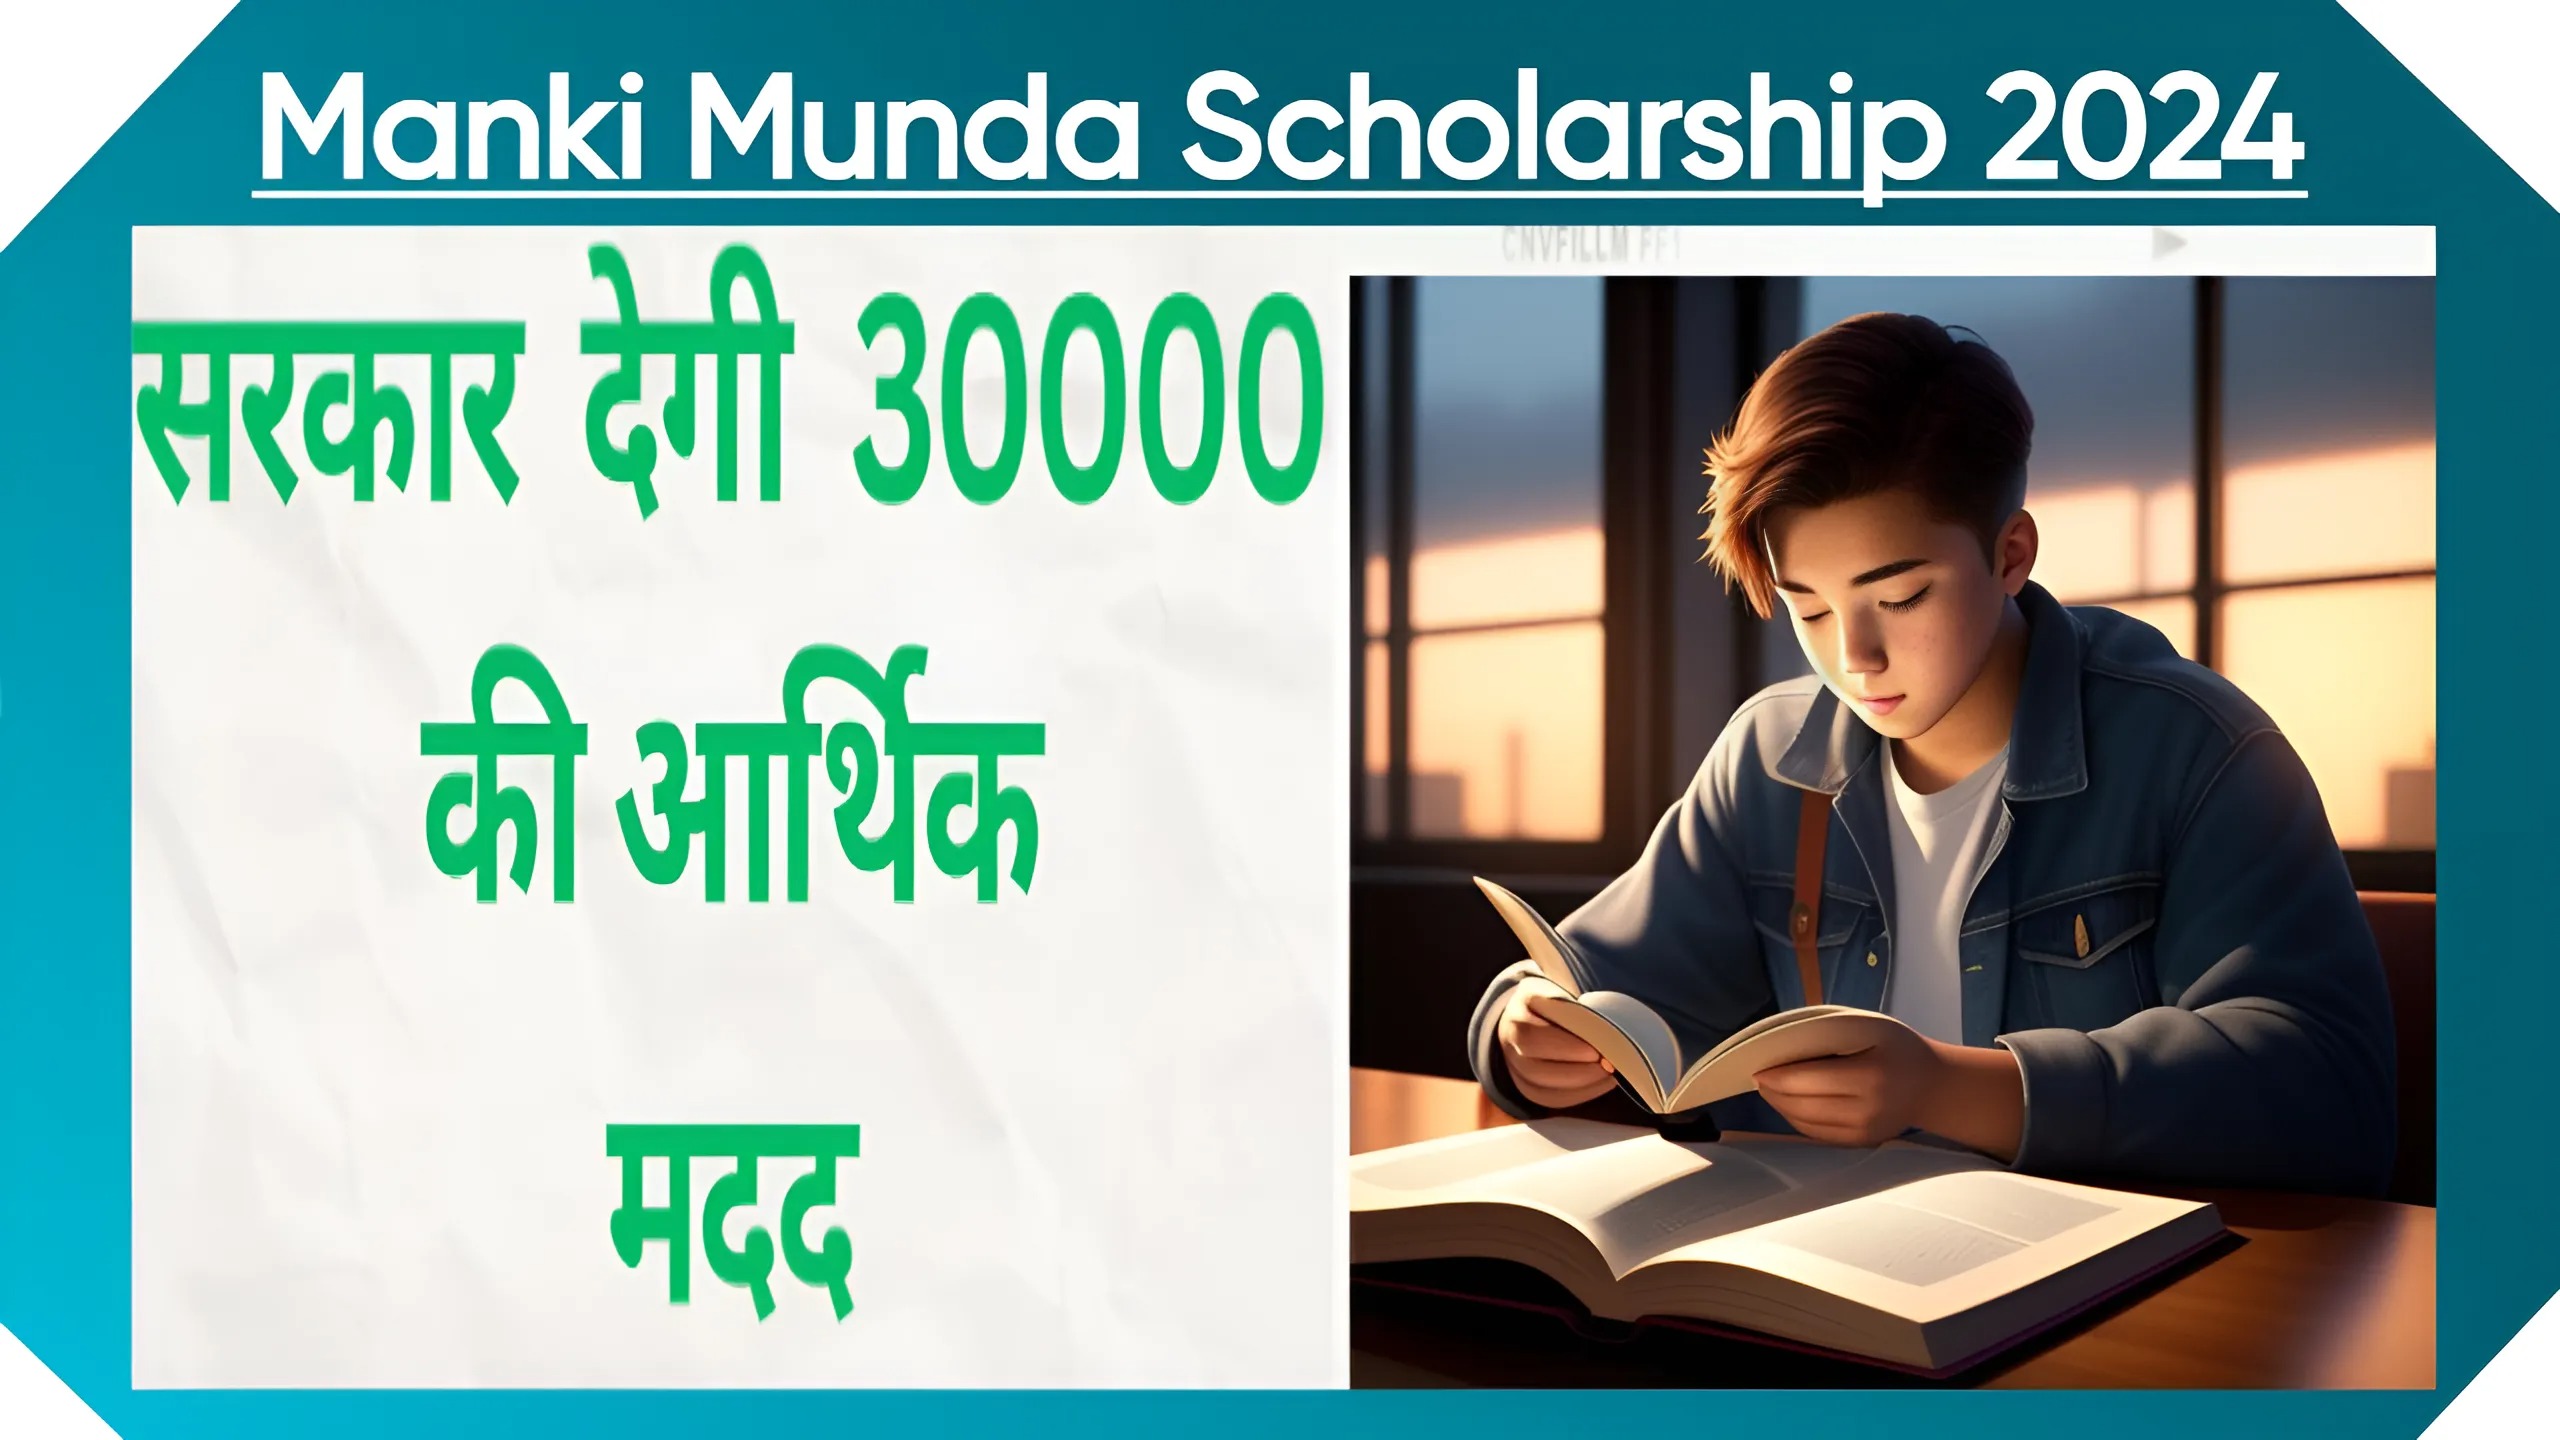 Manki Munda Scholarship 2024